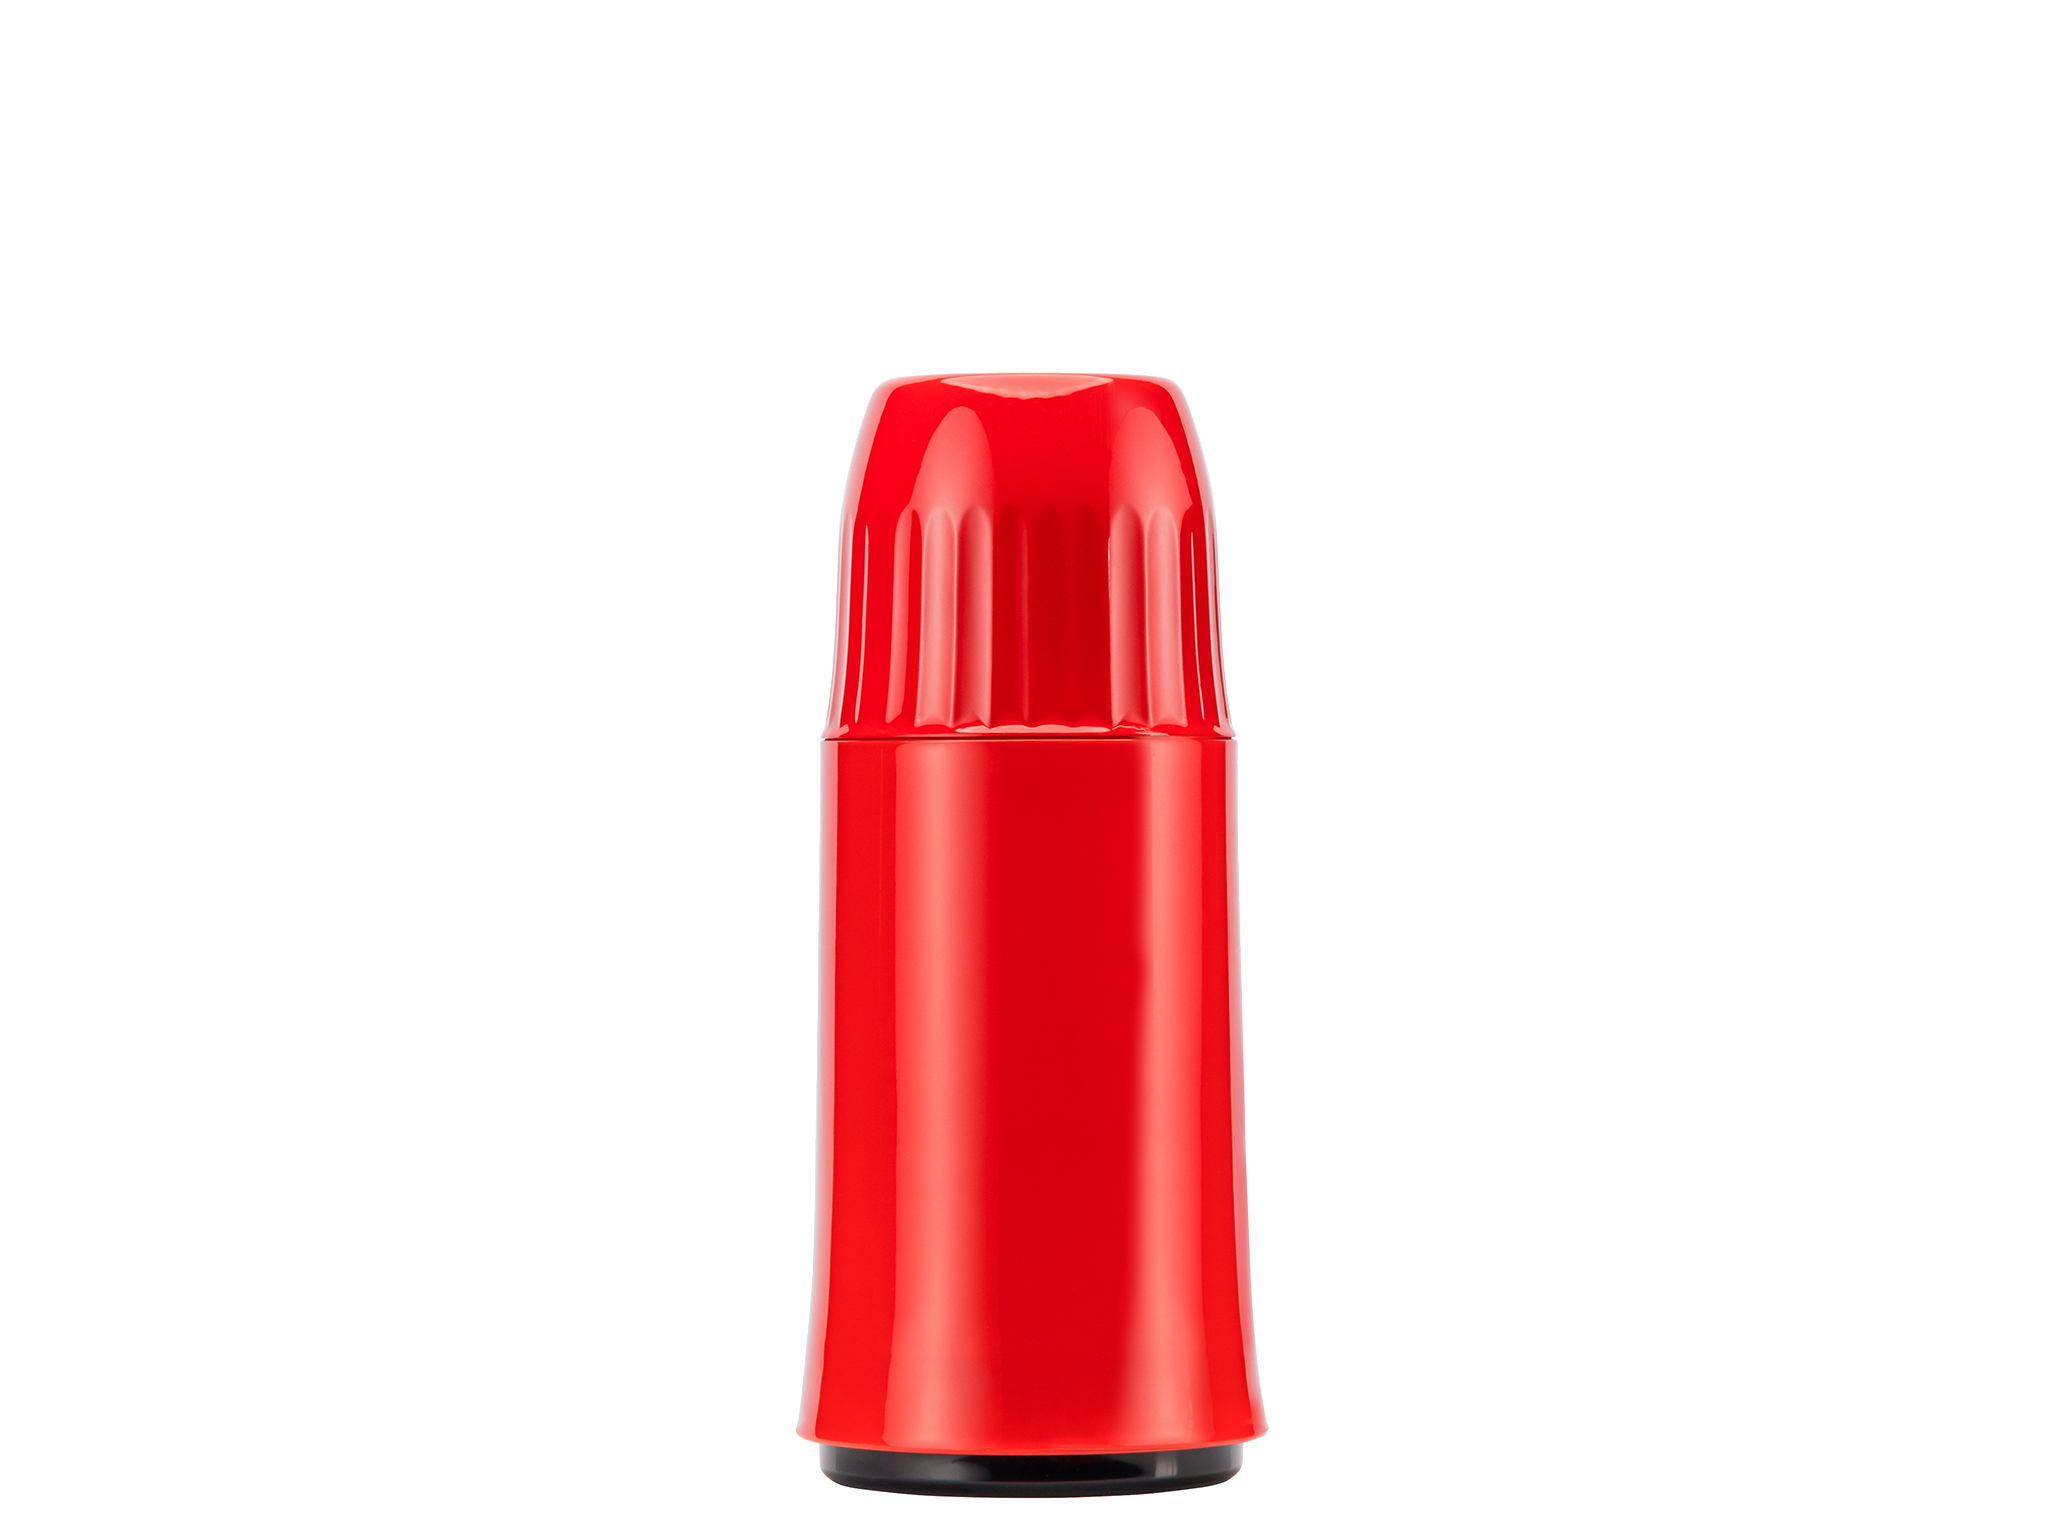 5461-011 - Vacuum flask red 0.25 L ROCKET - Helios